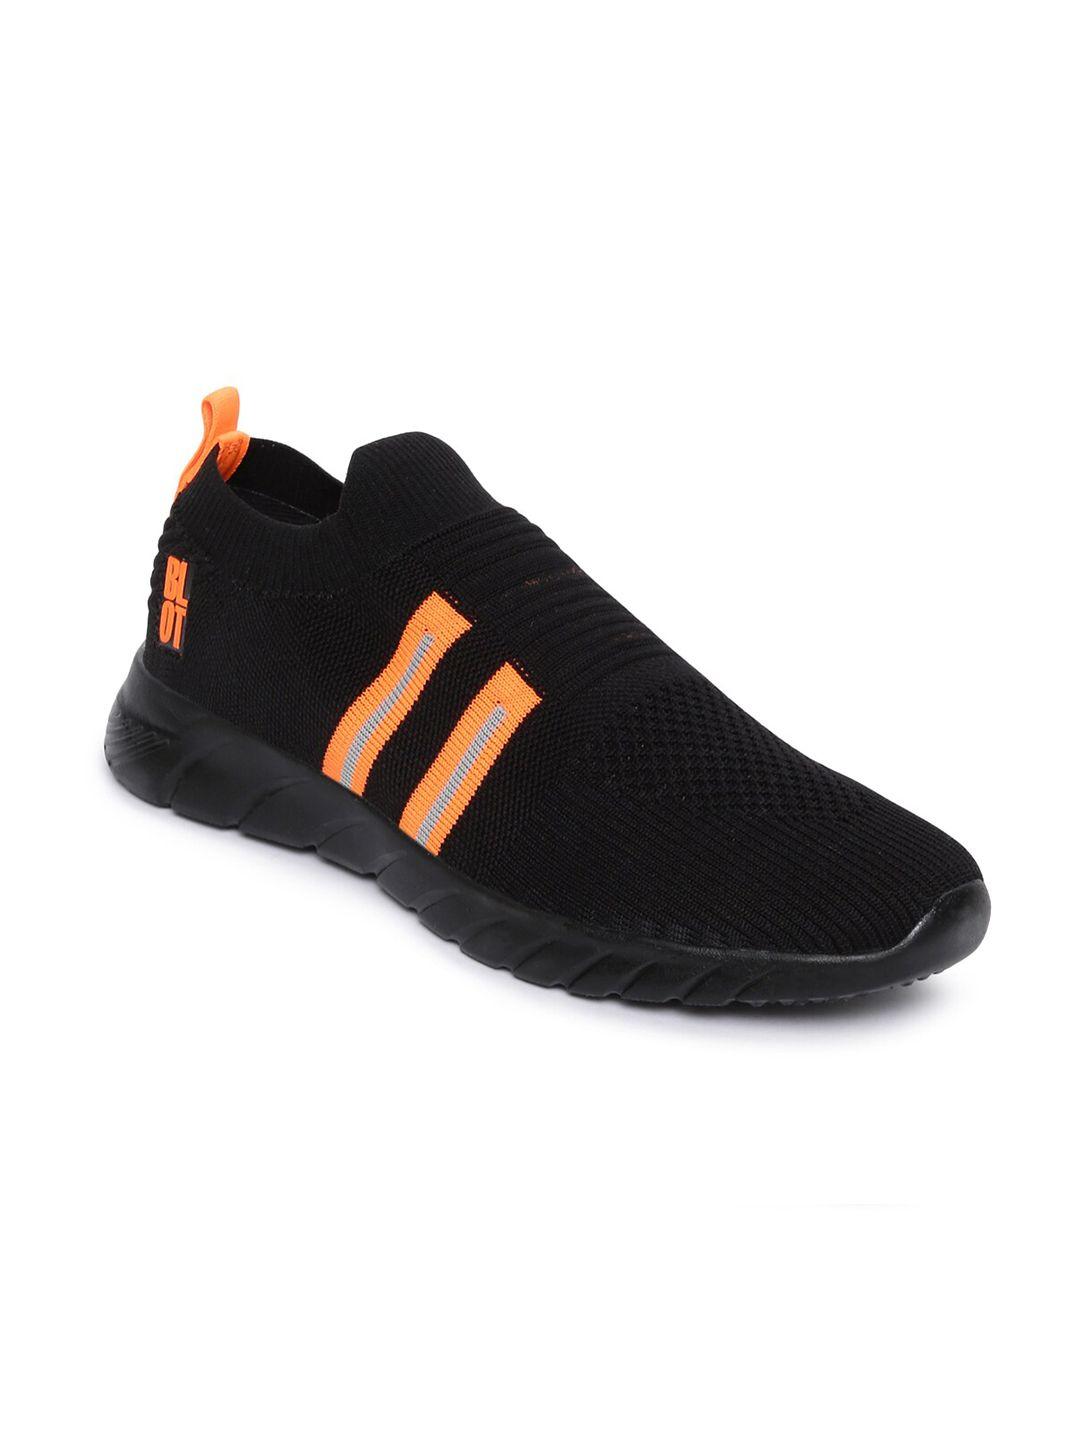 paragon-men-black-&-orange-running-shoes